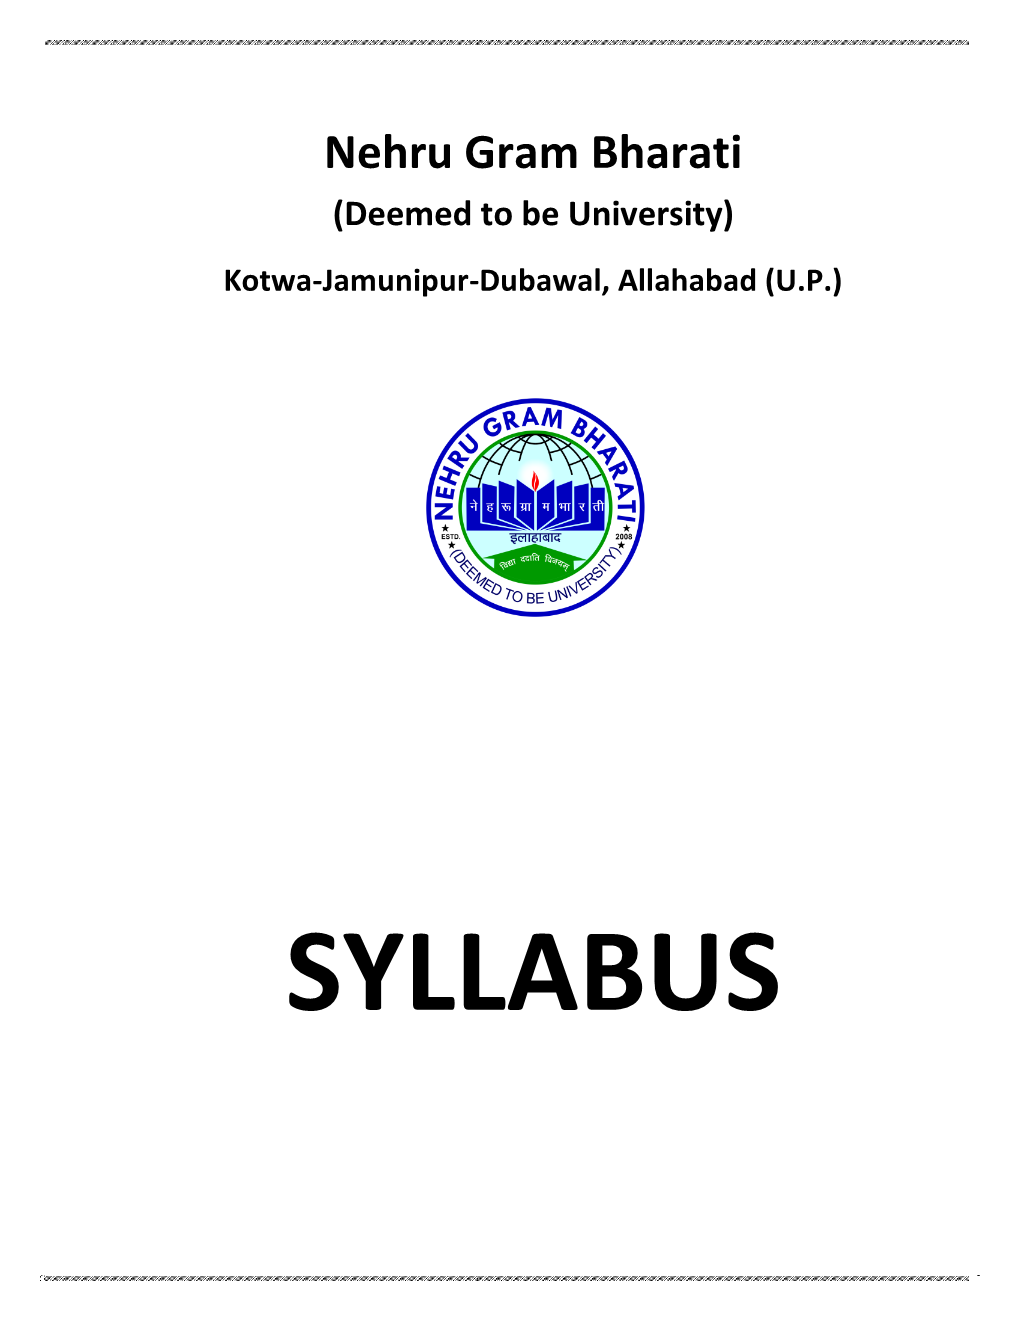 B.P.A.[Music] Syllabus